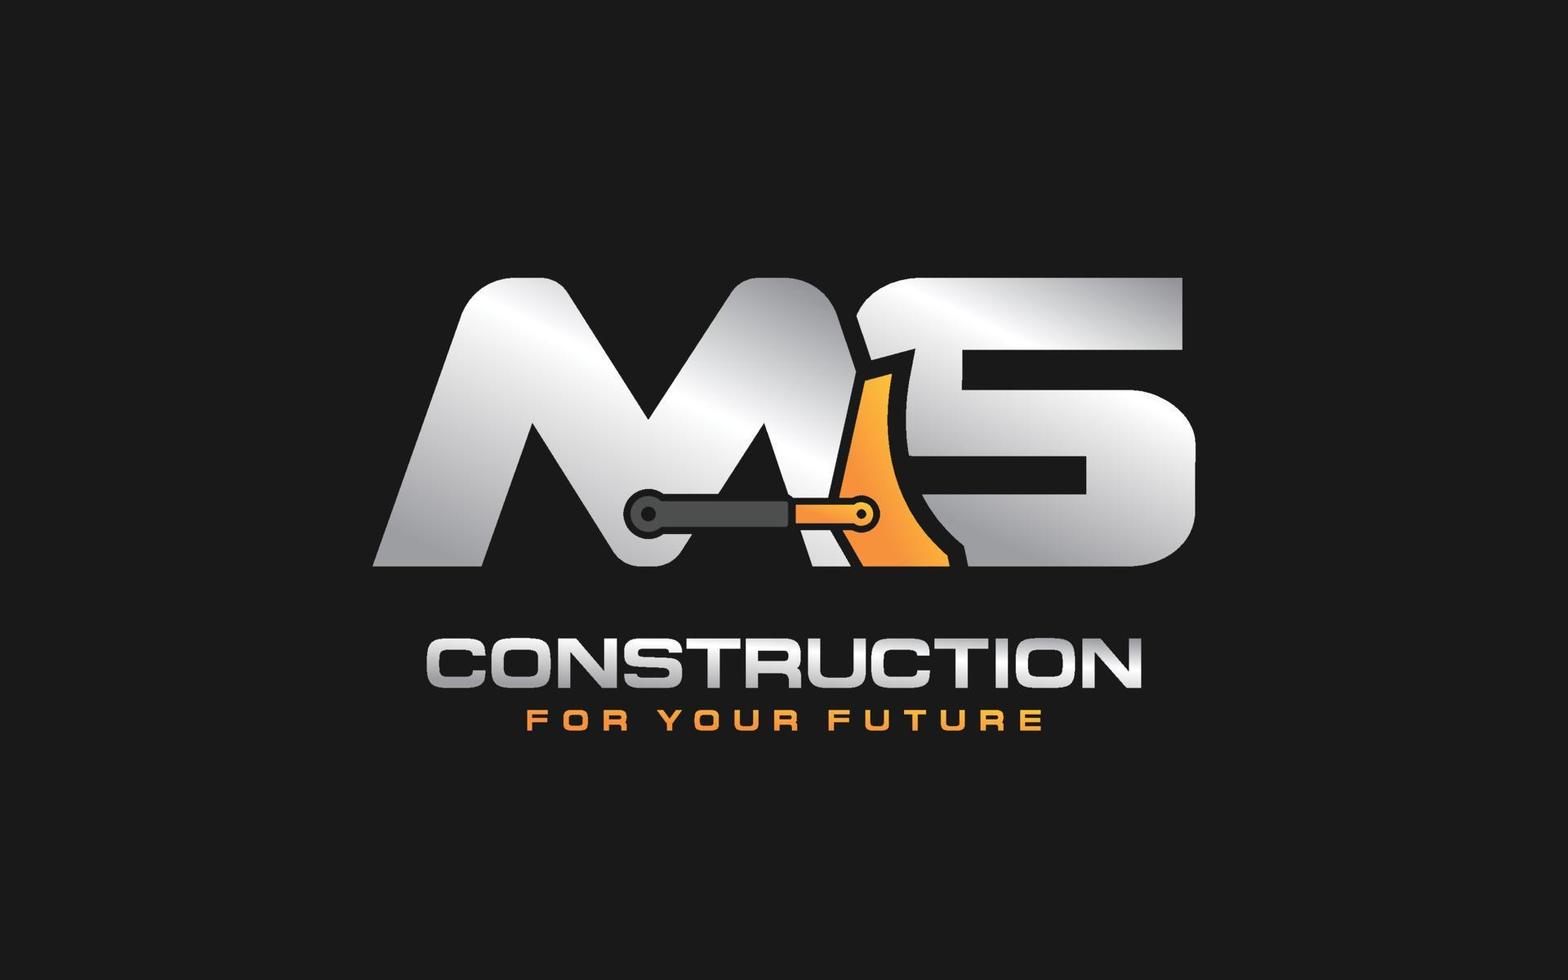 ms logo excavadora para empresa constructora. ilustración de vector de plantilla de equipo pesado para su marca.